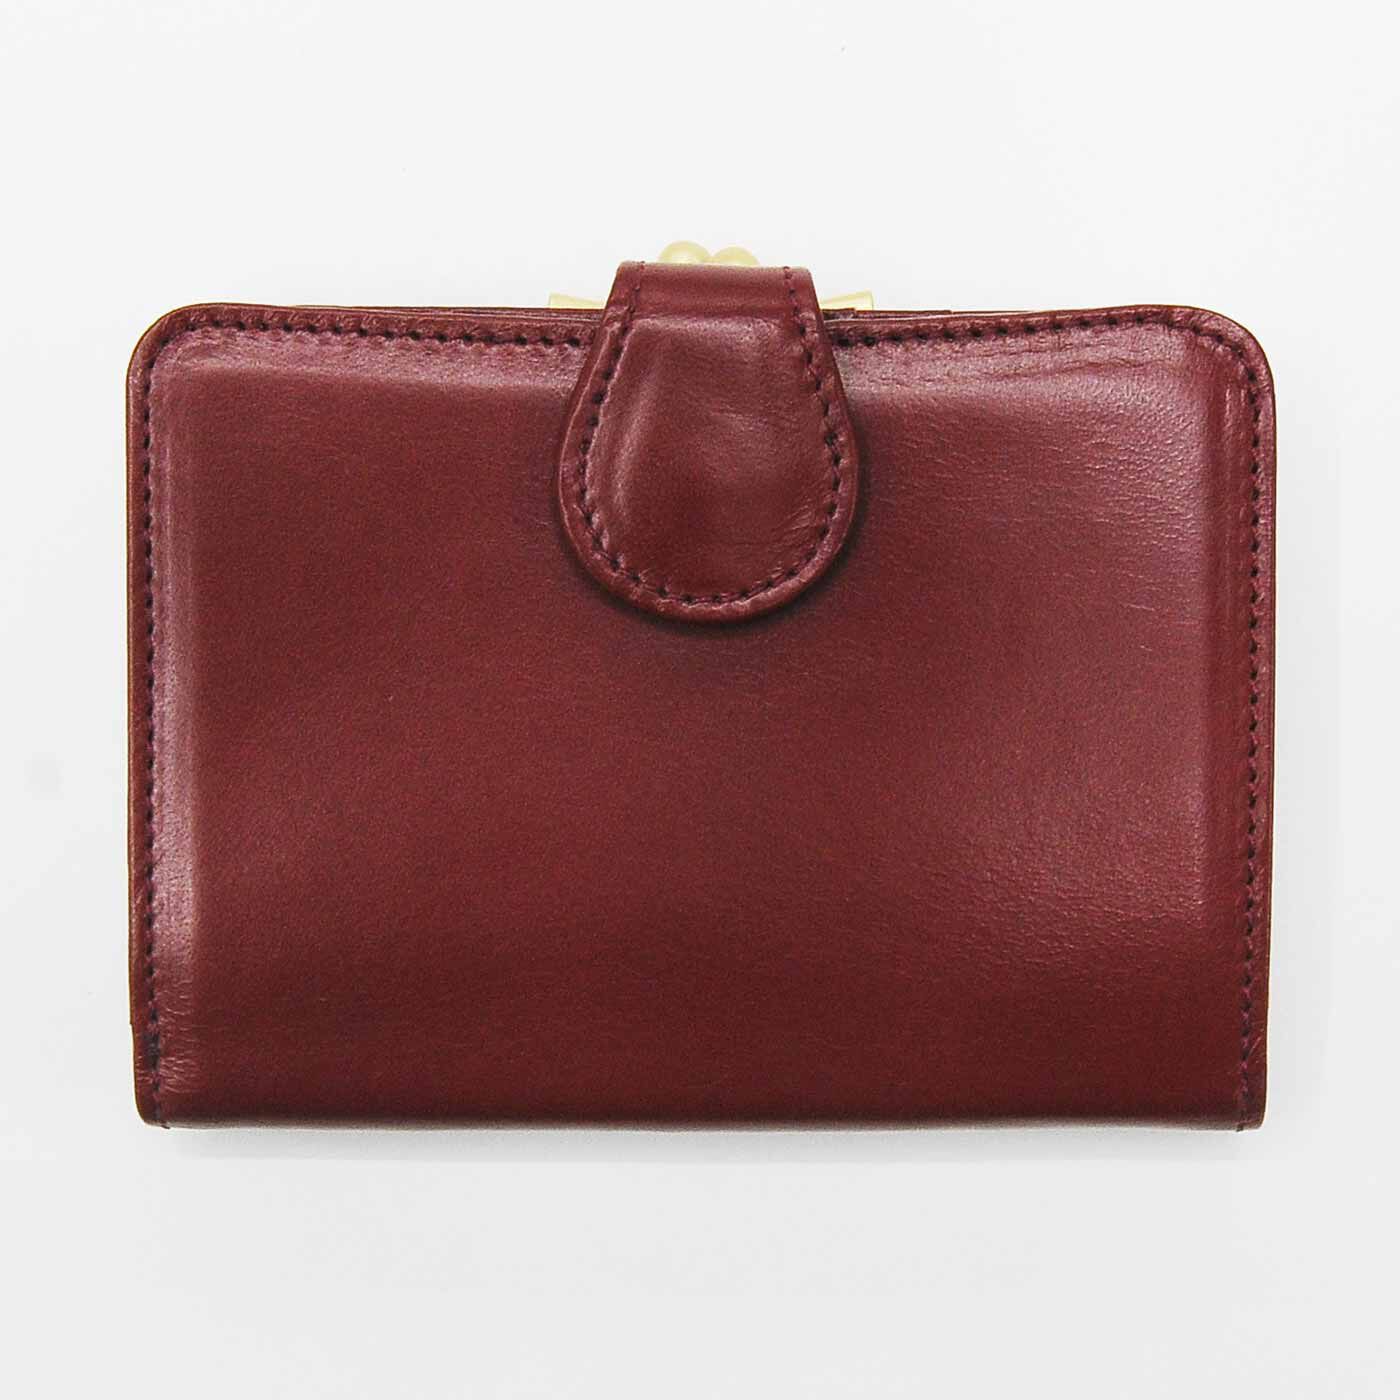 ＆Stories|職人が誂えた 仕草華やぐ 大人の馬革折り財布〈薔薇色〉[本革 財布：日本製]|手にしっくり収まる、絶妙サイズの折り財布。